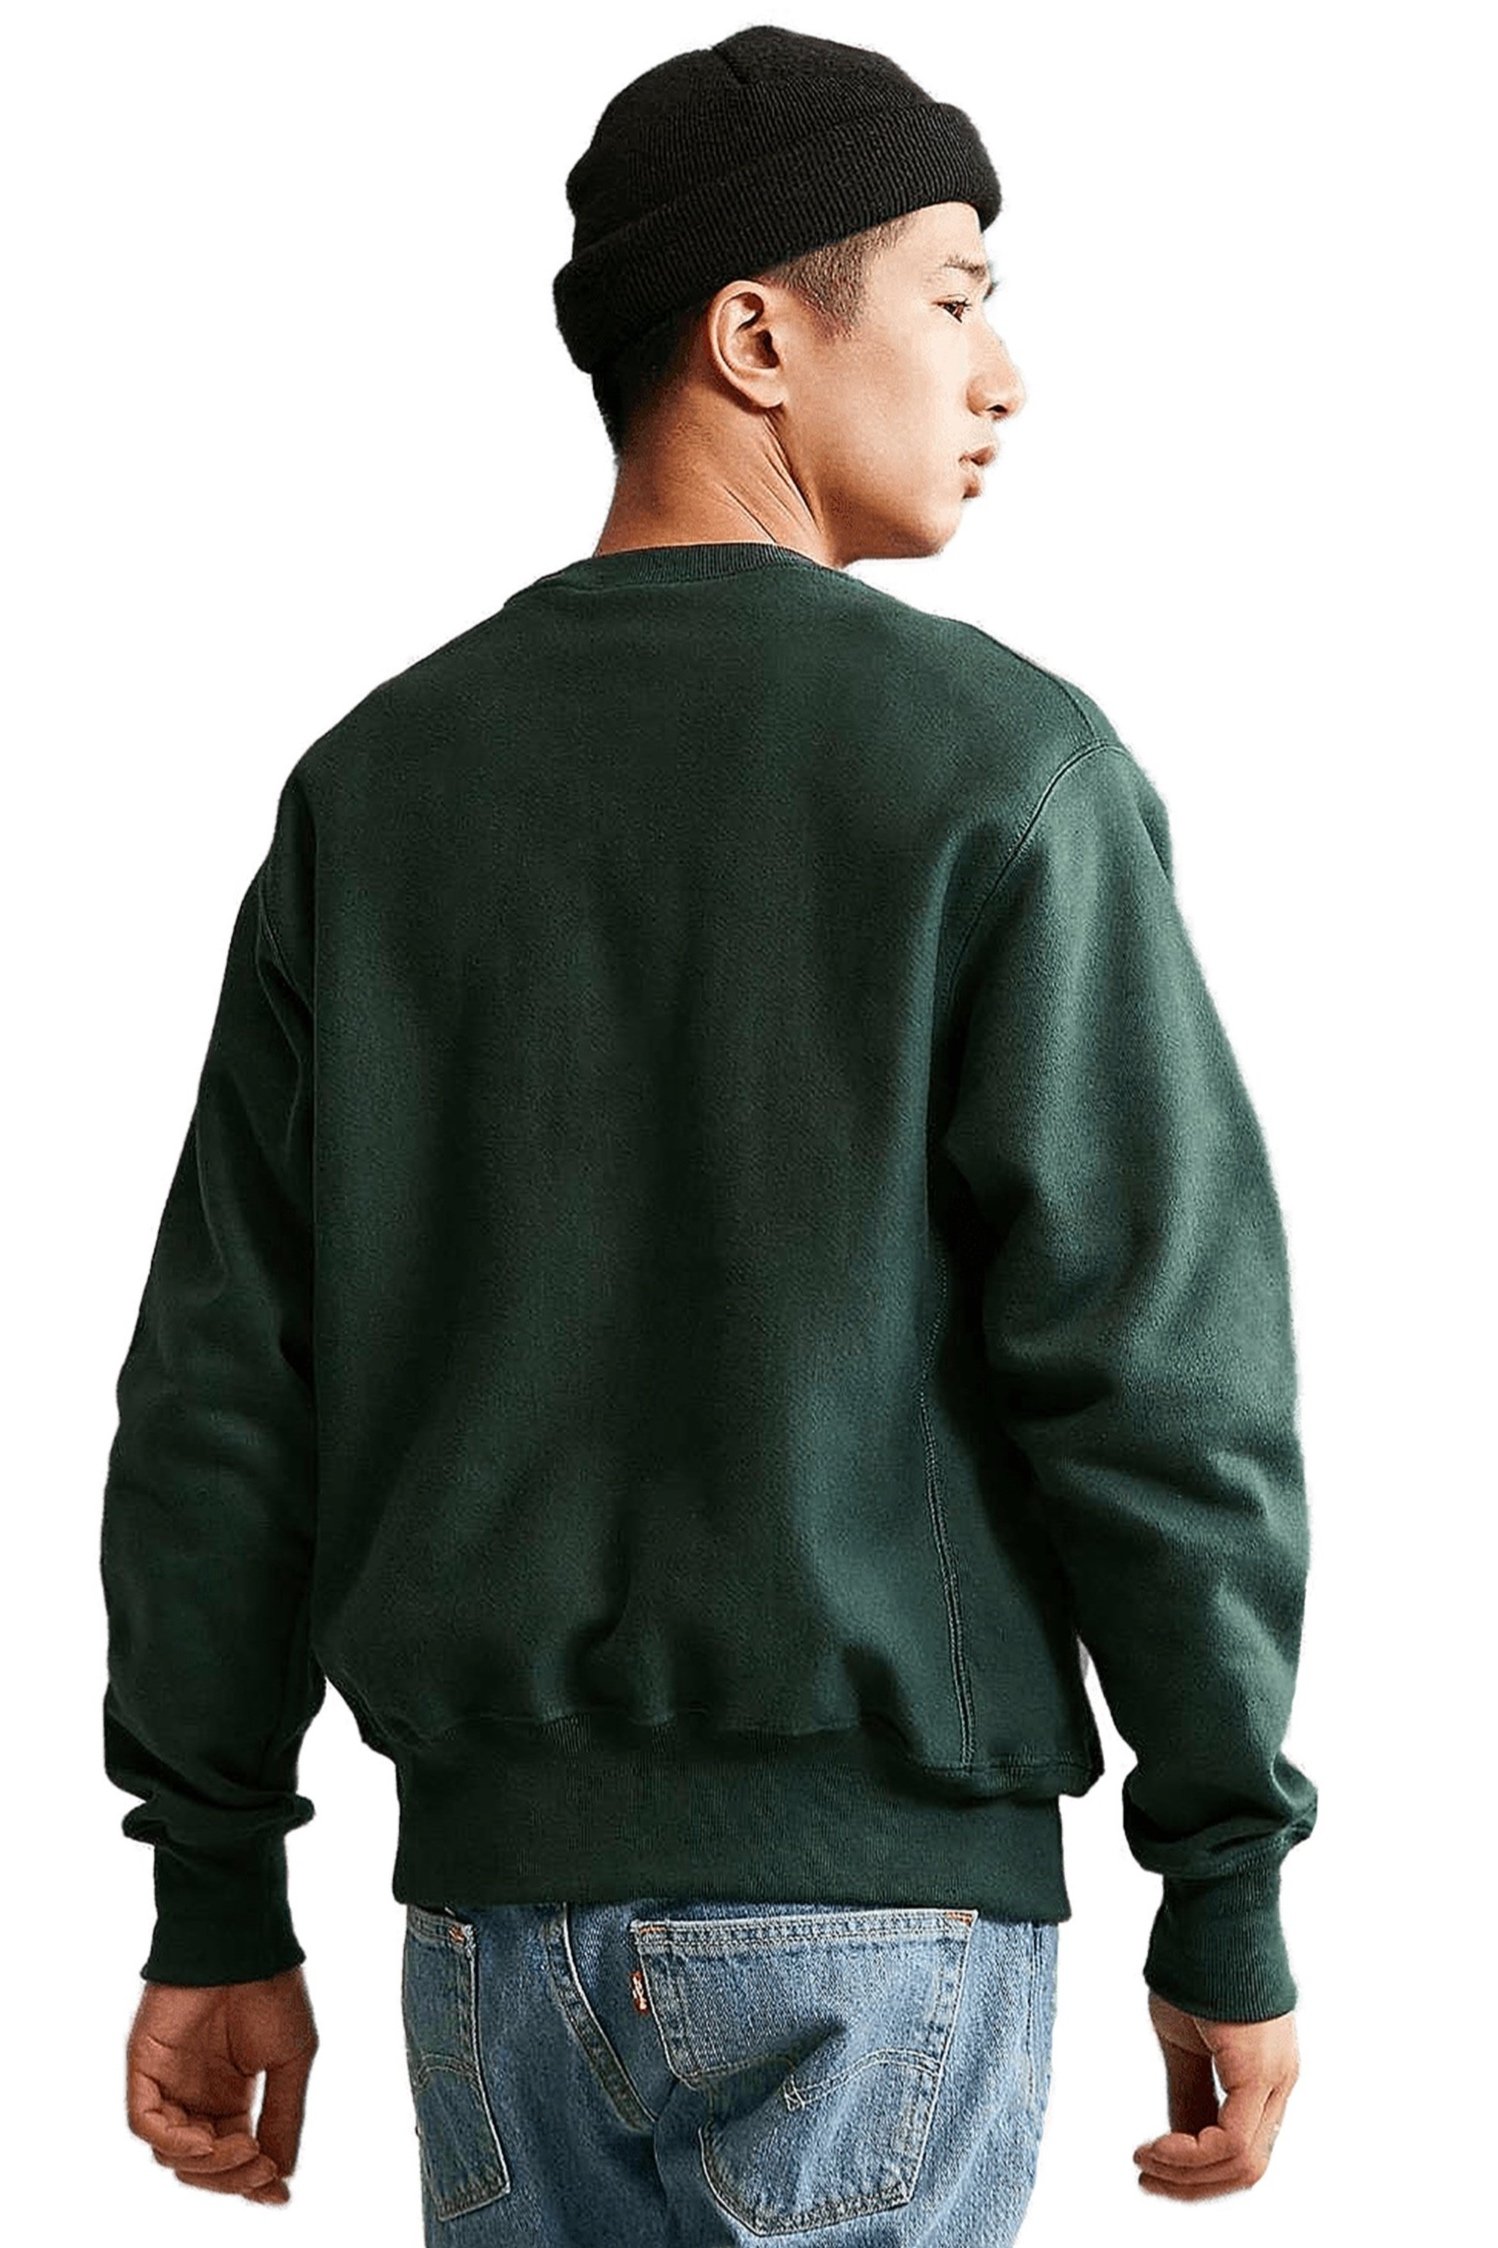 Sky%252BOak%252BCo-Champion-Tokyo-simple-script-reverse-weave-green-sweatshirt-male-model-back.jpg